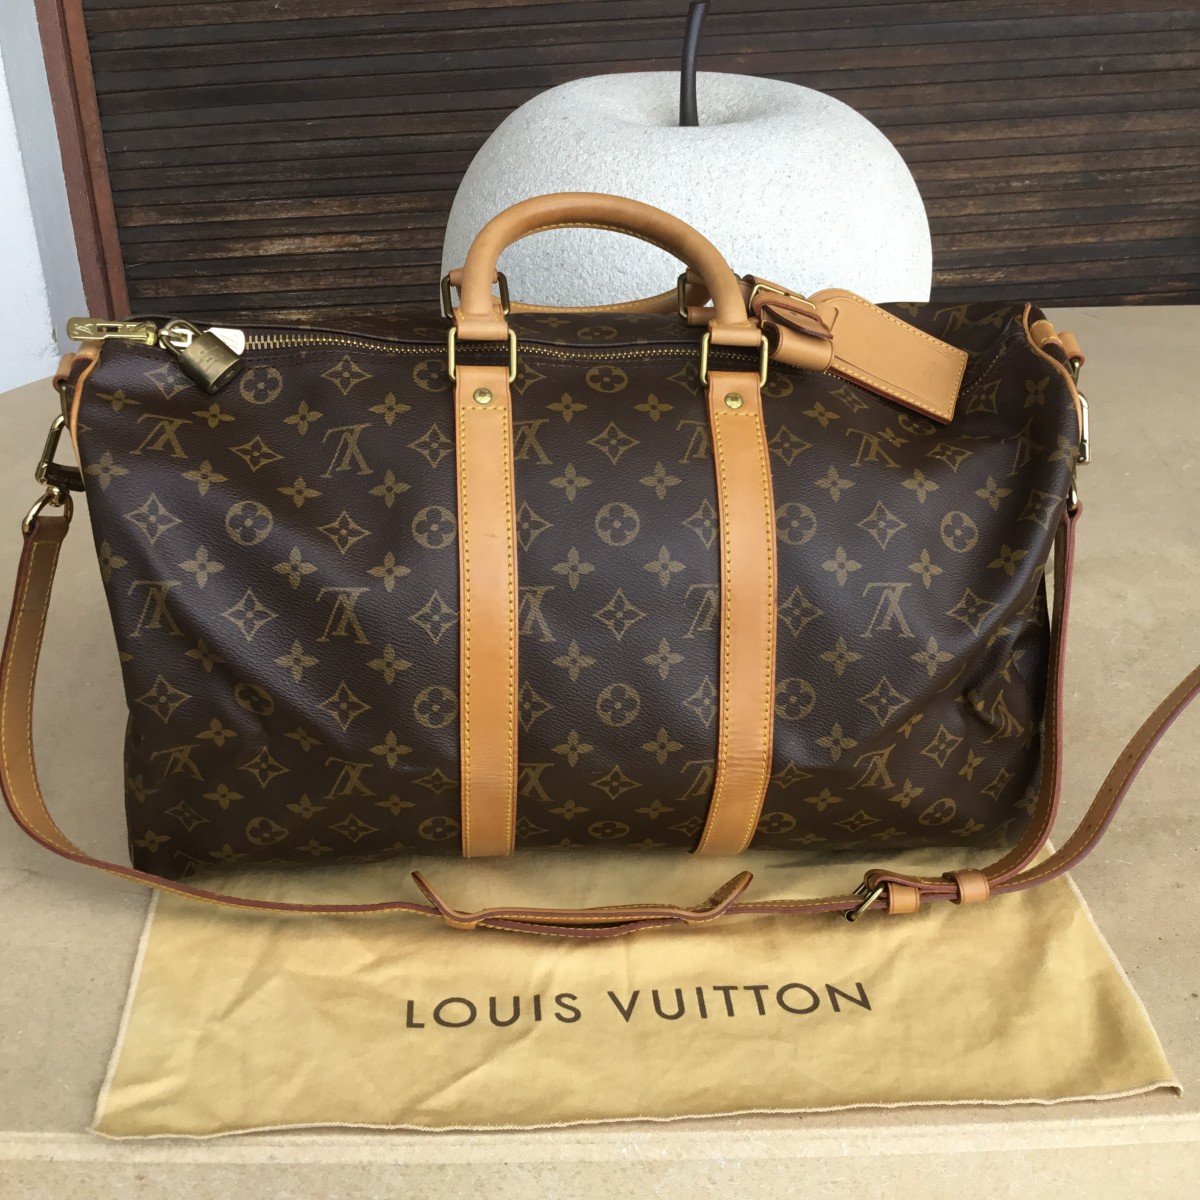 Vuitton - Keepball Travel Bag